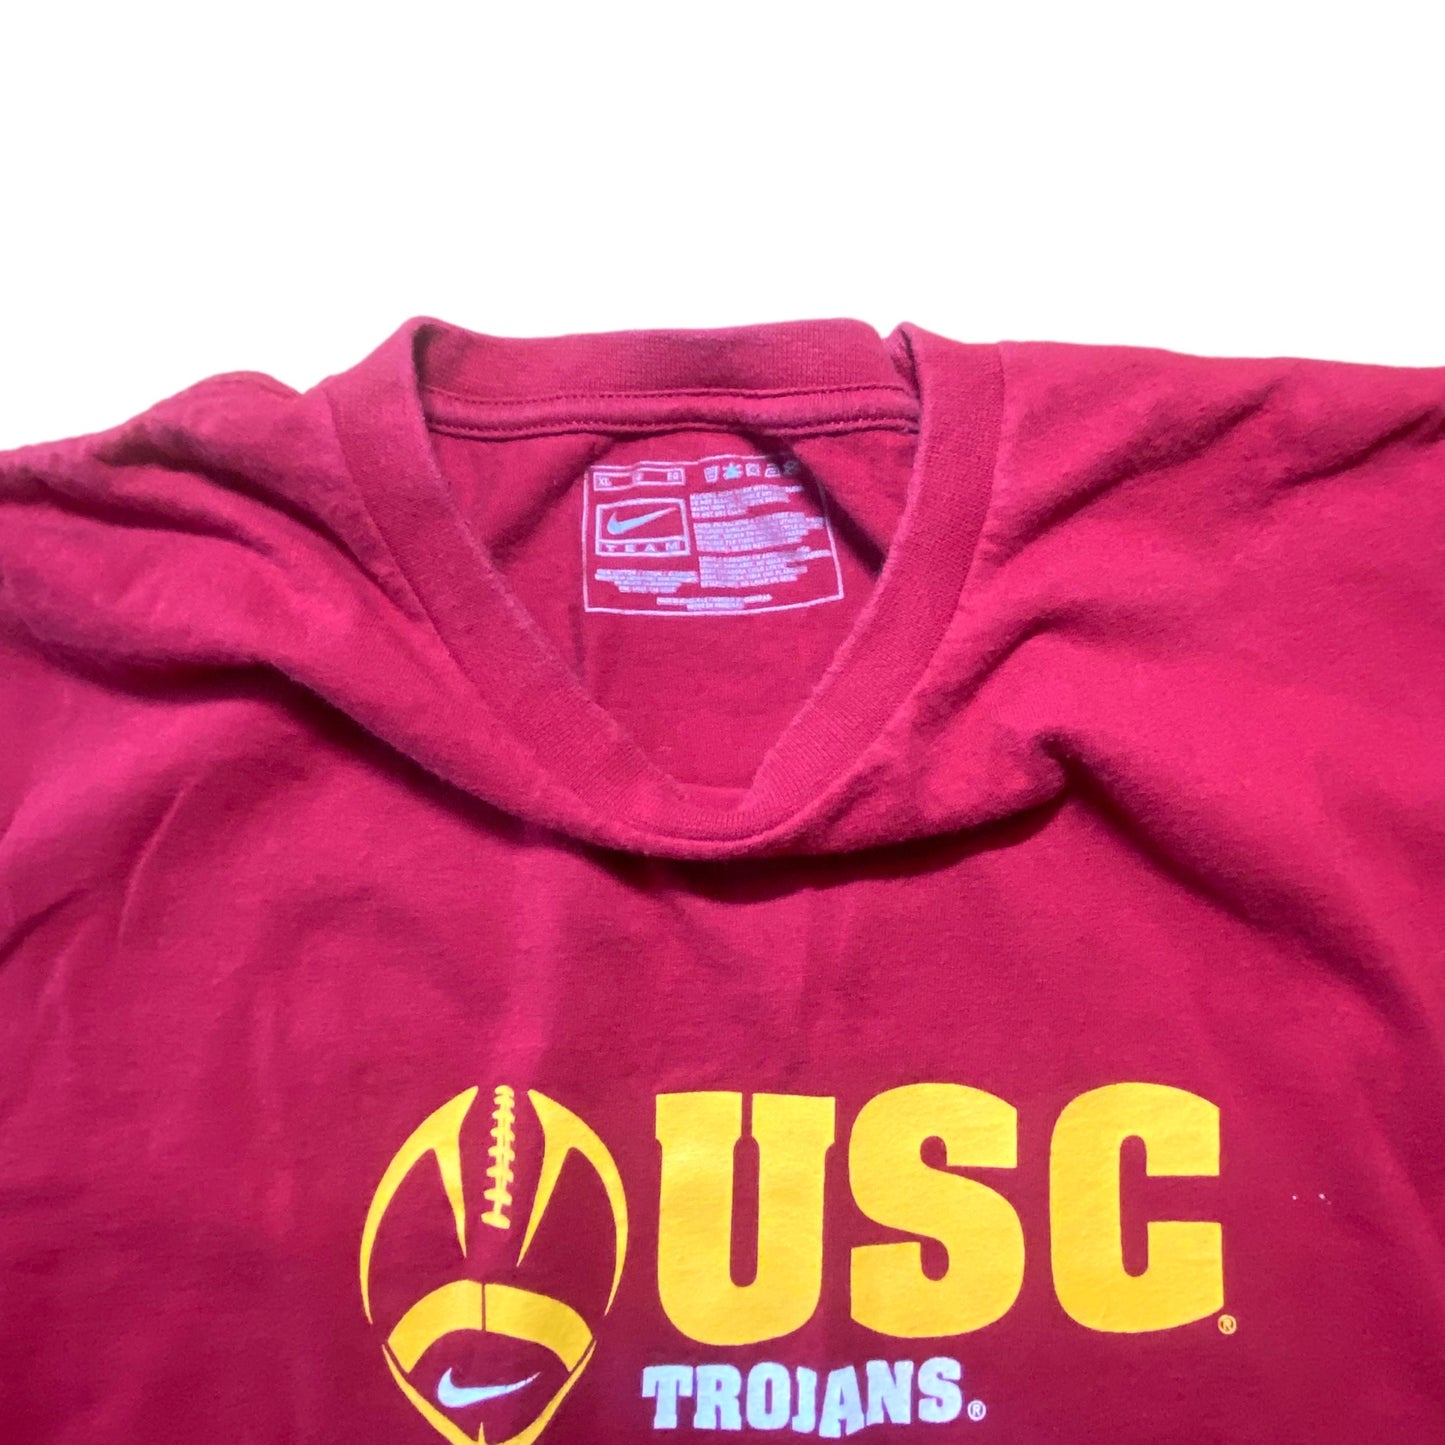 Nike - USC Trojans Vintage Y2K T-Shirt